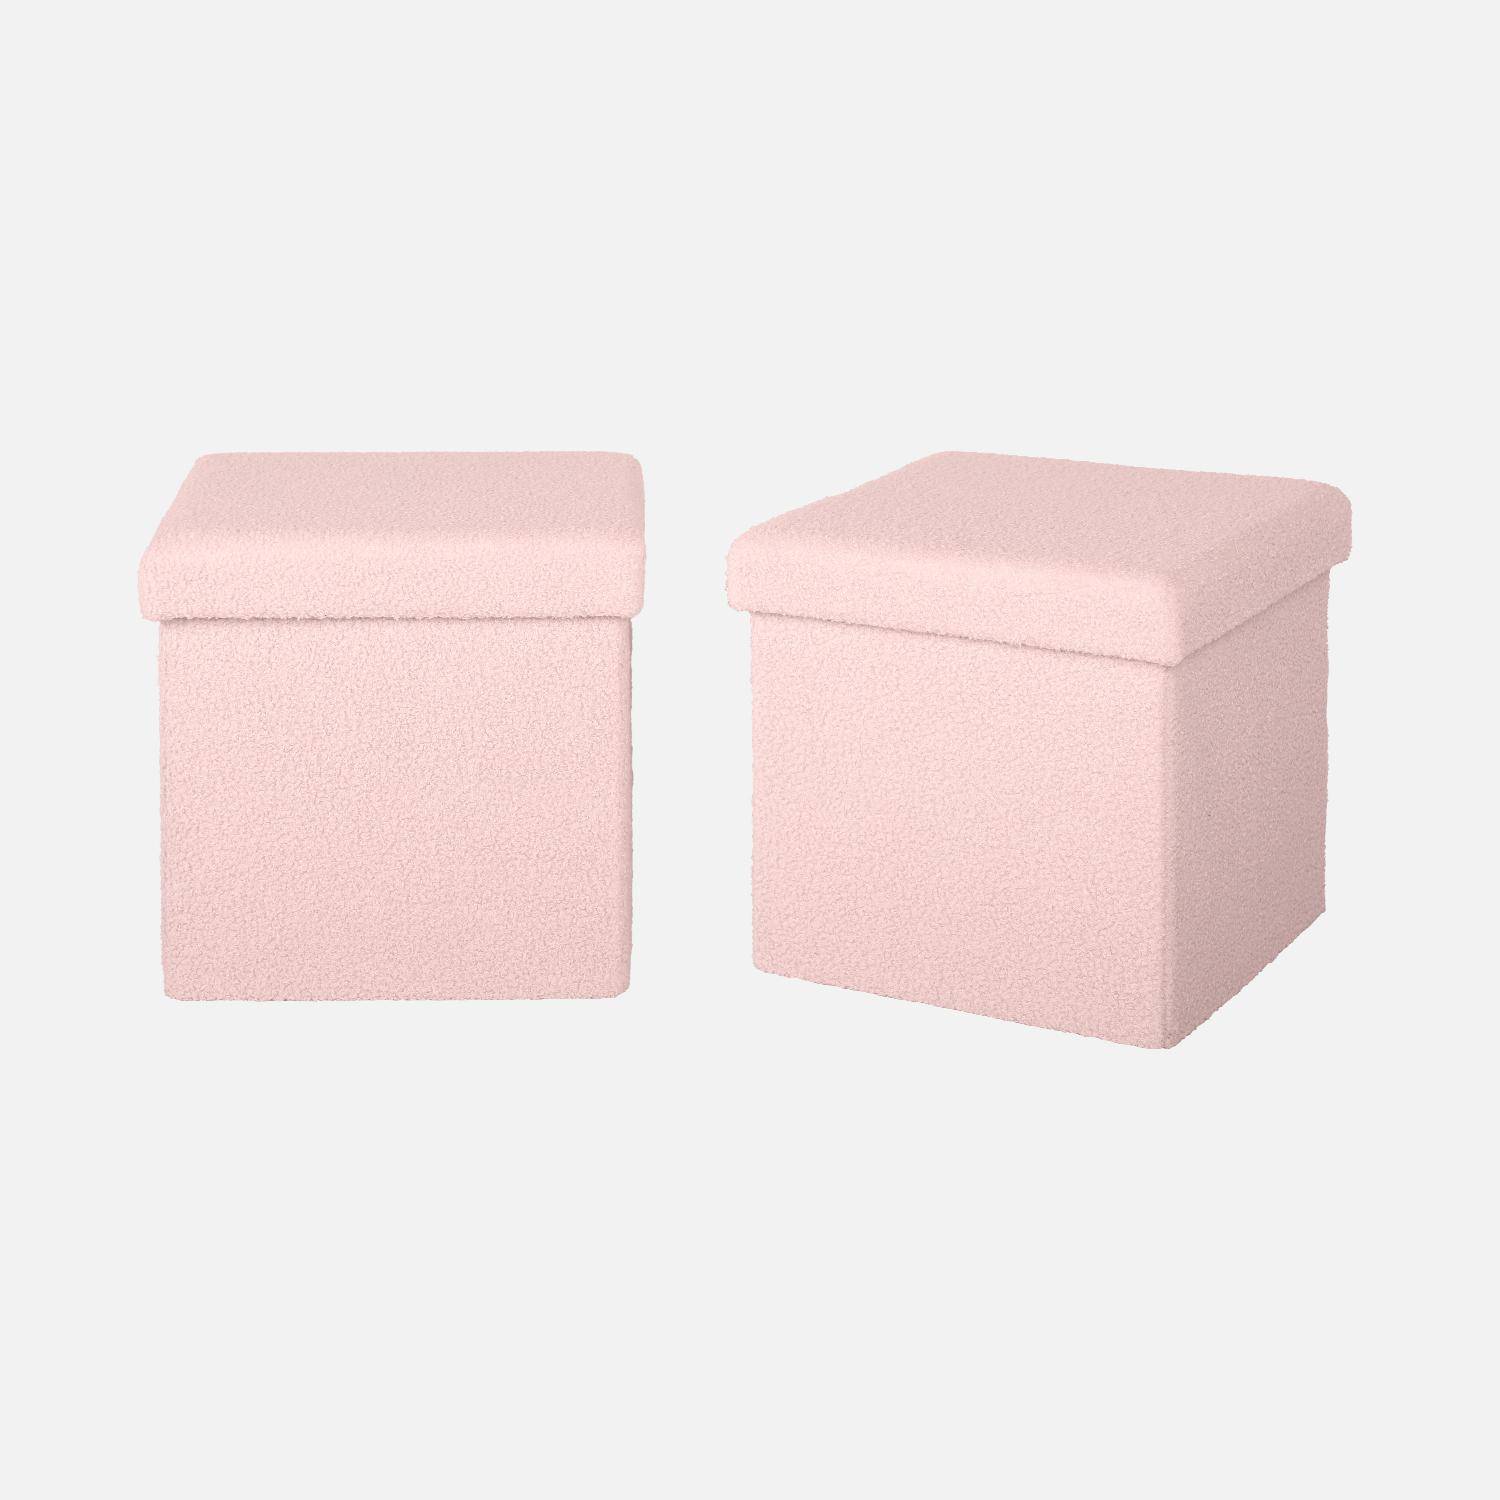 Juego de 2 taburetes de almacenaje rizados de color rosa con caja plegable para niños Photo1